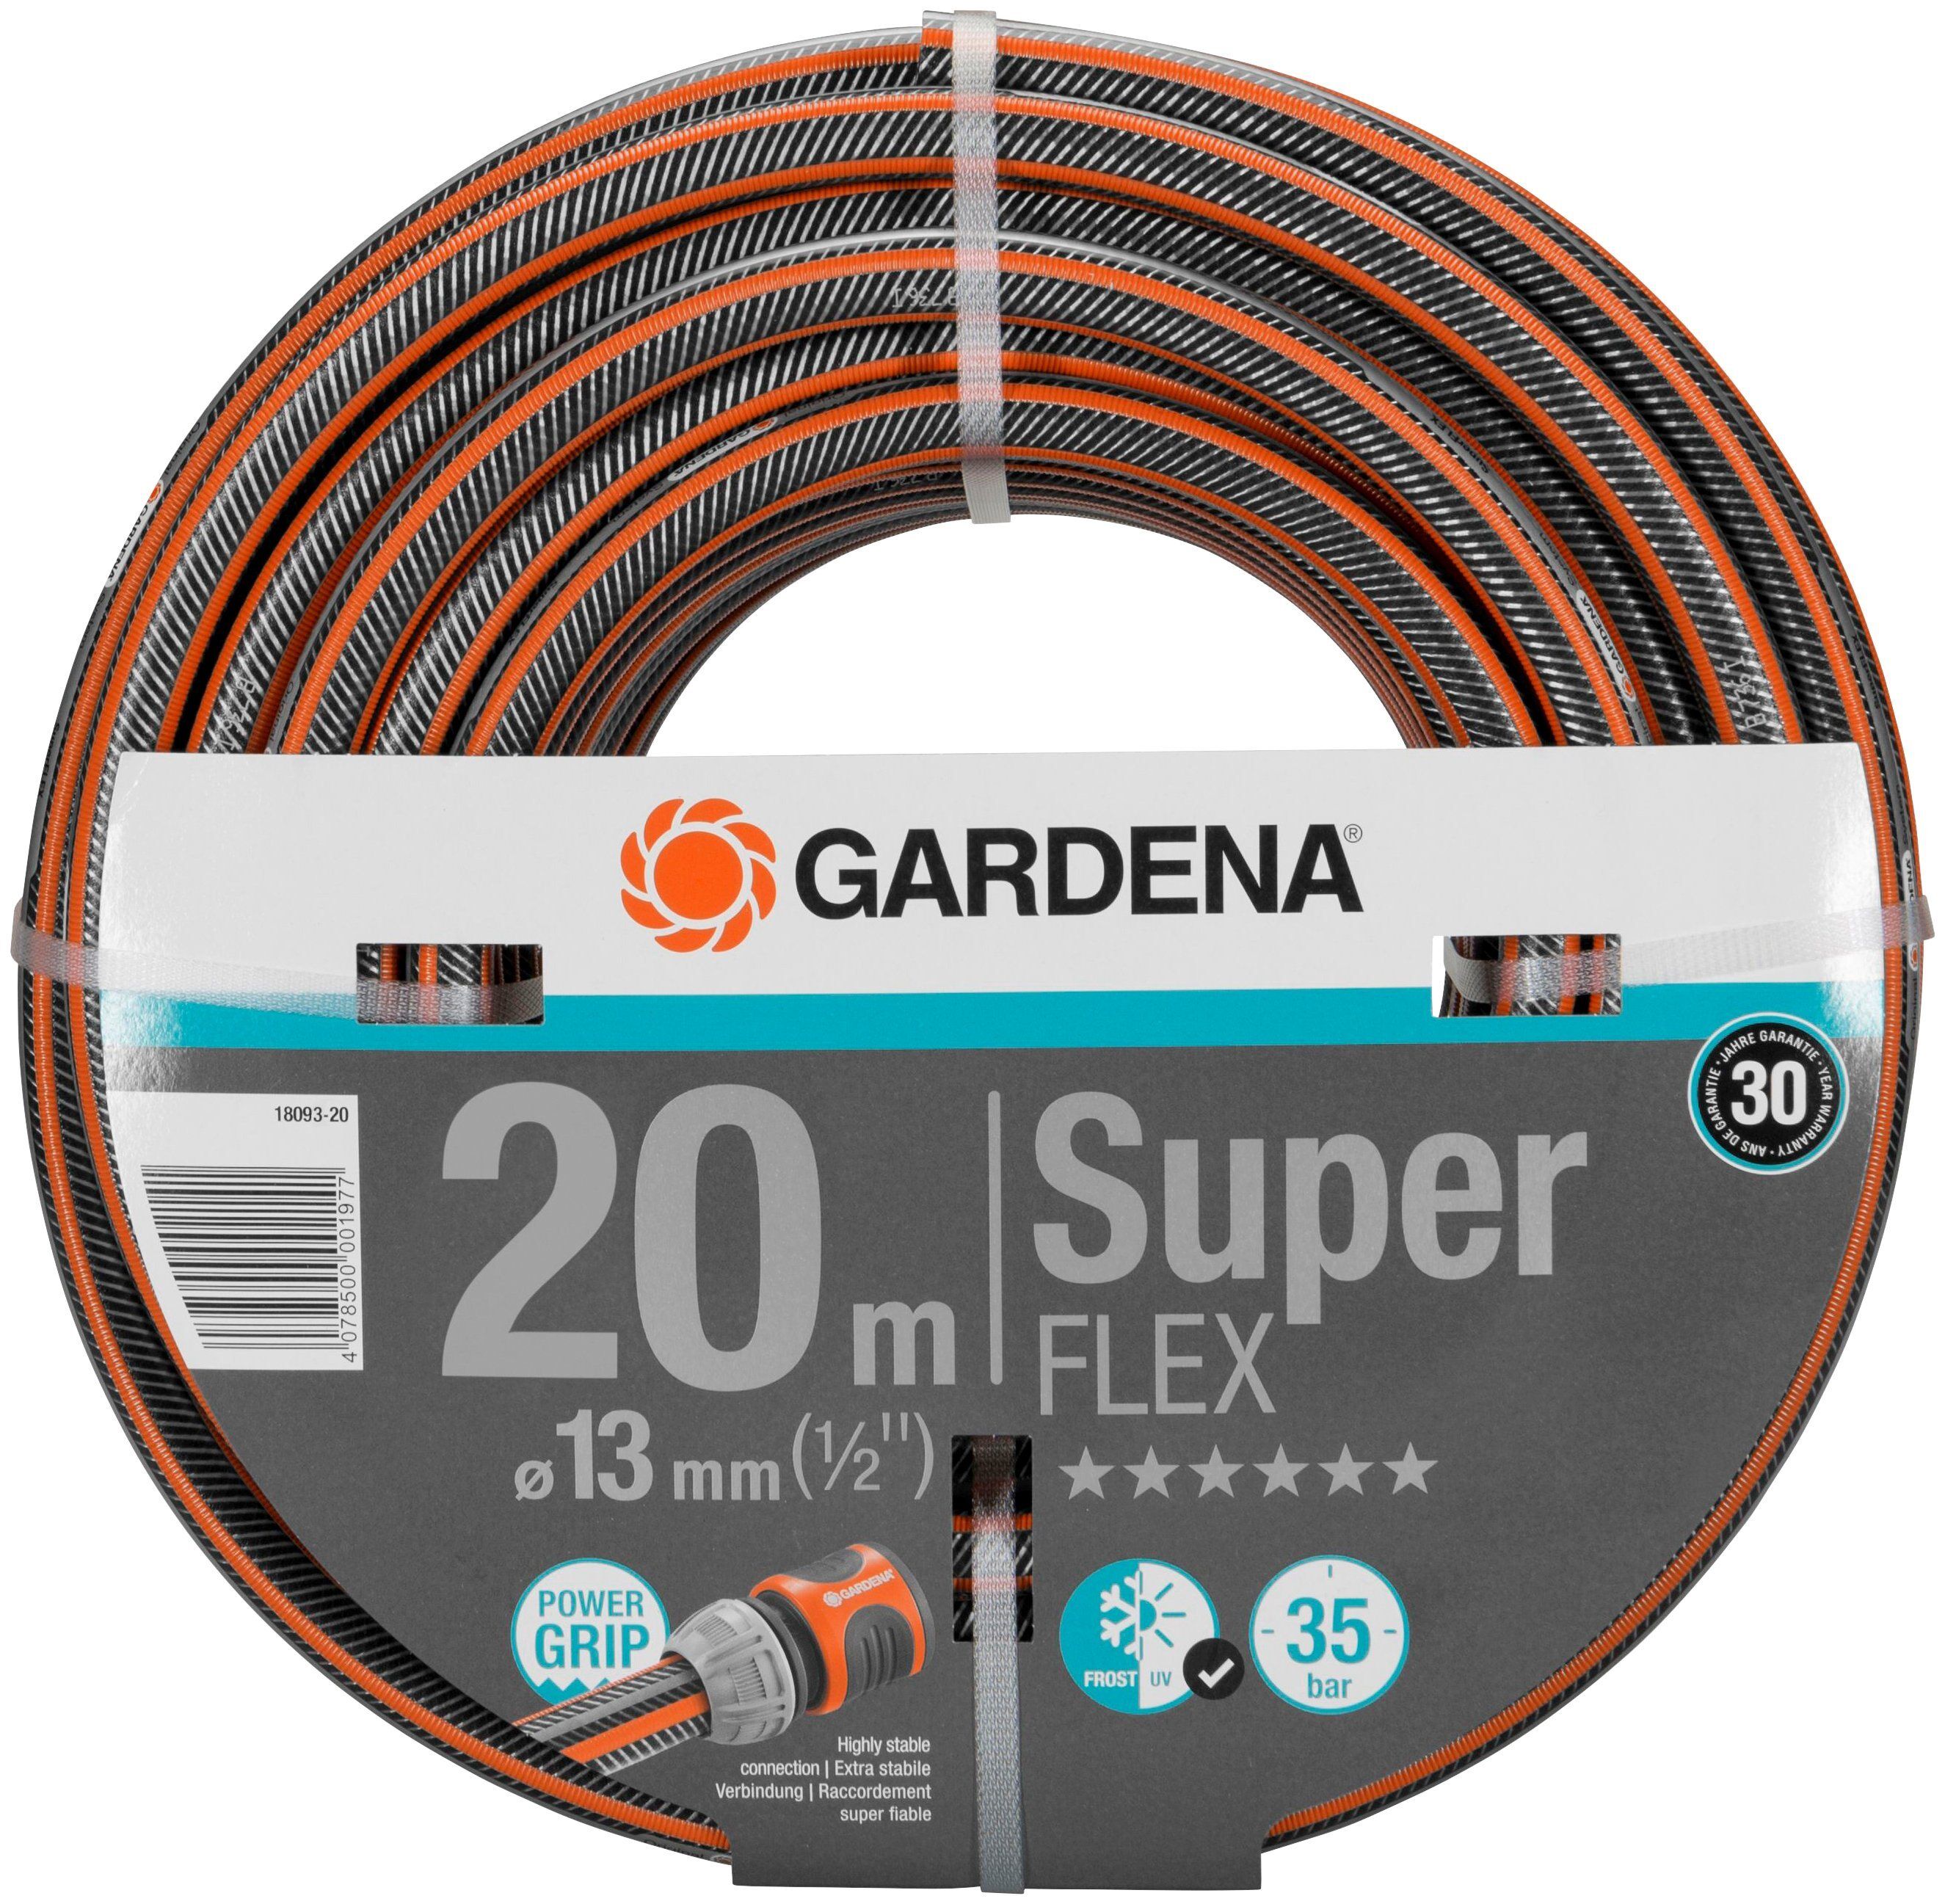 GARDENA Gartenschlauch »Premium SuperFLEX, 18093-20«, L: 20 m, 13 mm (1/2)